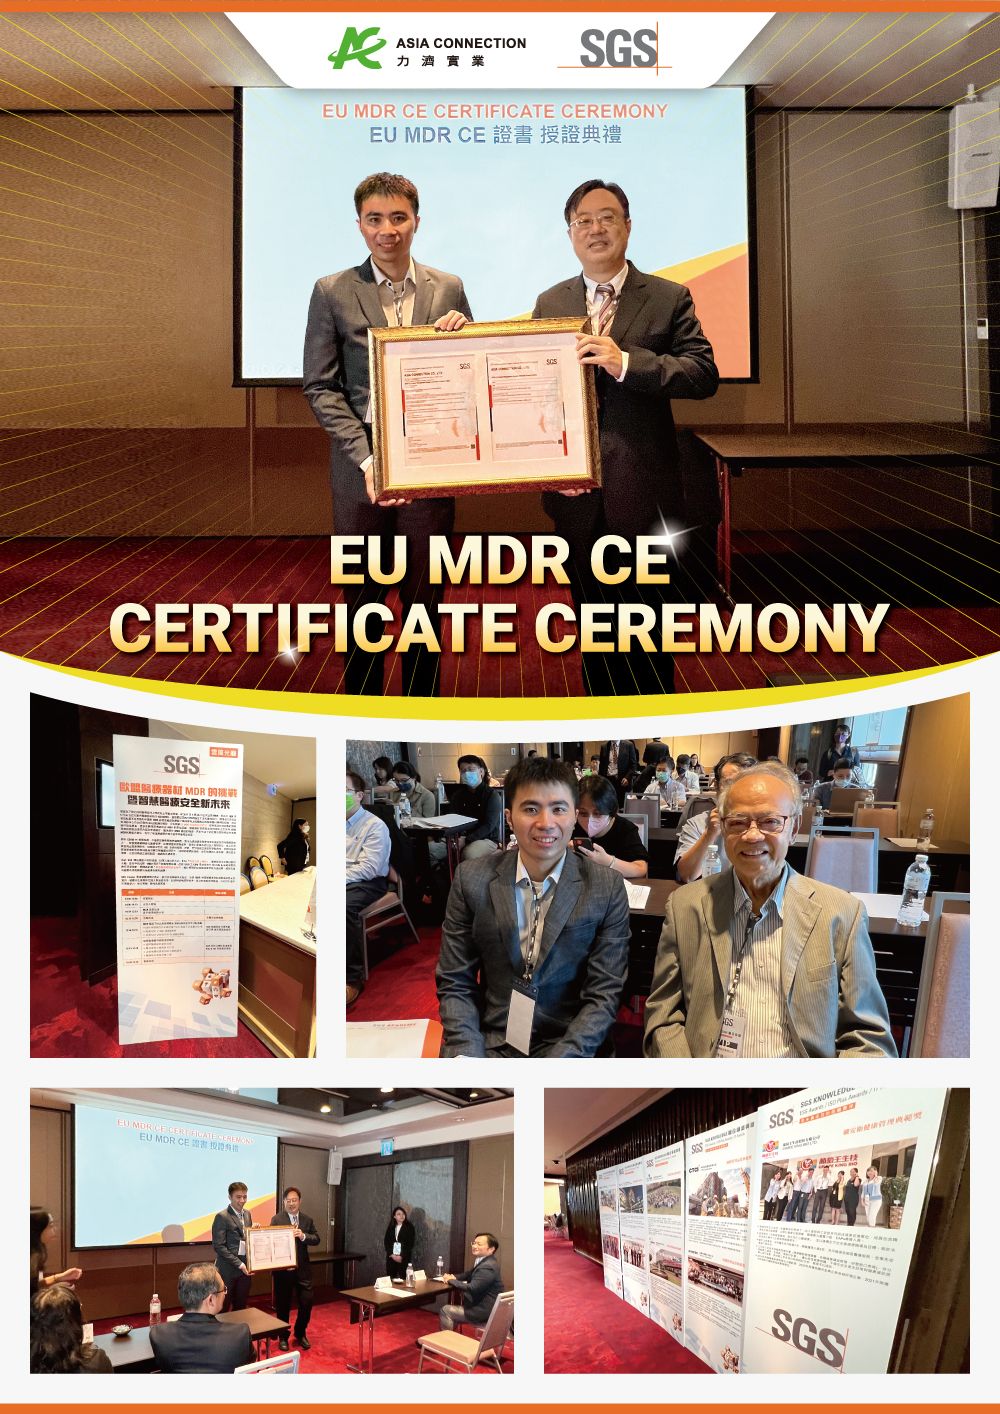 De ME8202X-aangedreven neusaspirator van Asia Connection behaalt CE-certificering onder de EU 2017/745 Medical Device Regulation (MDR)